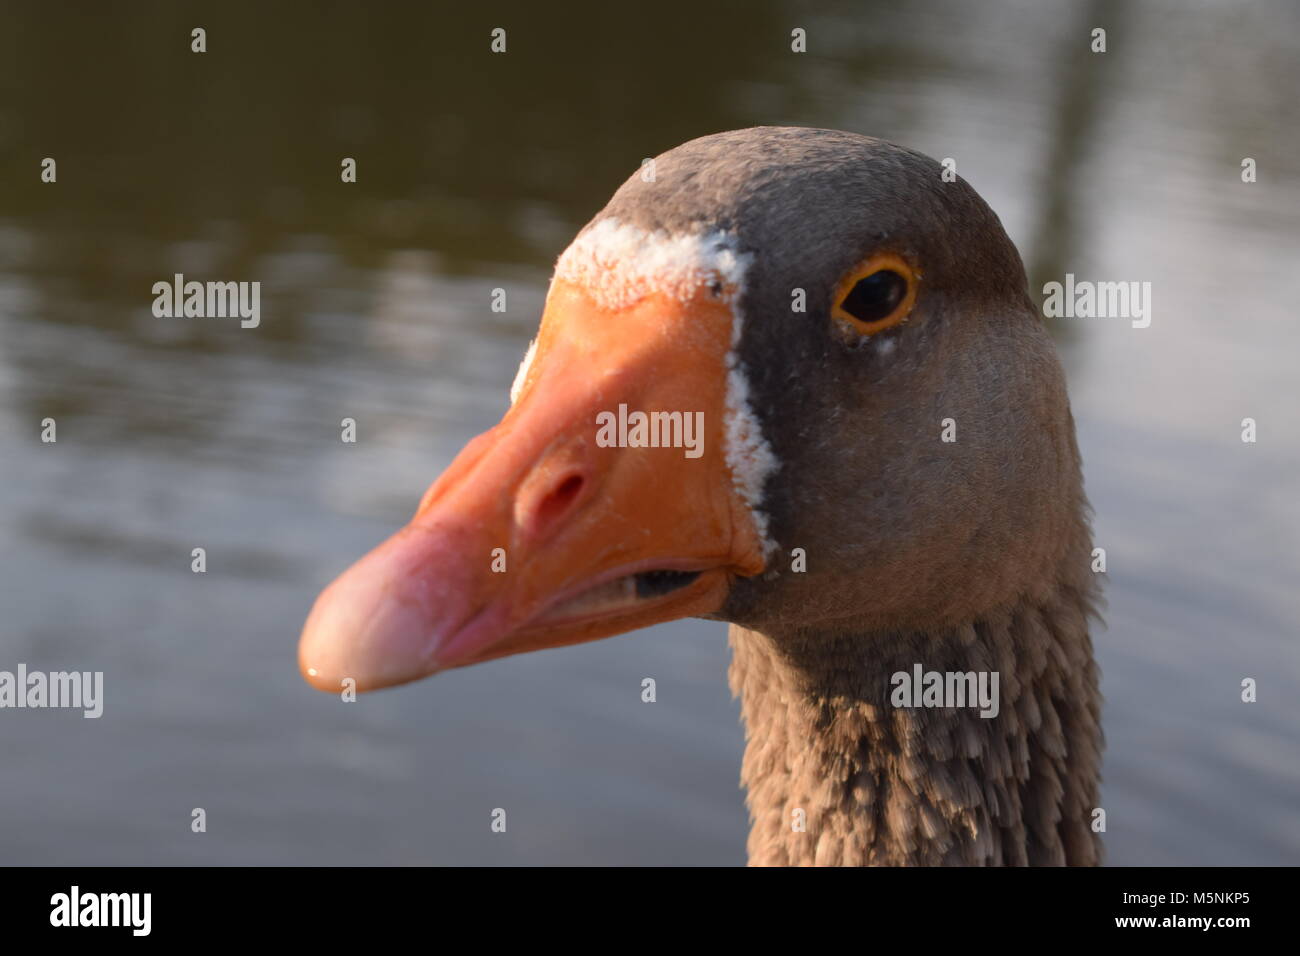 Graue Ente mit Orangen Schnabel Stockfotografie - Alamy